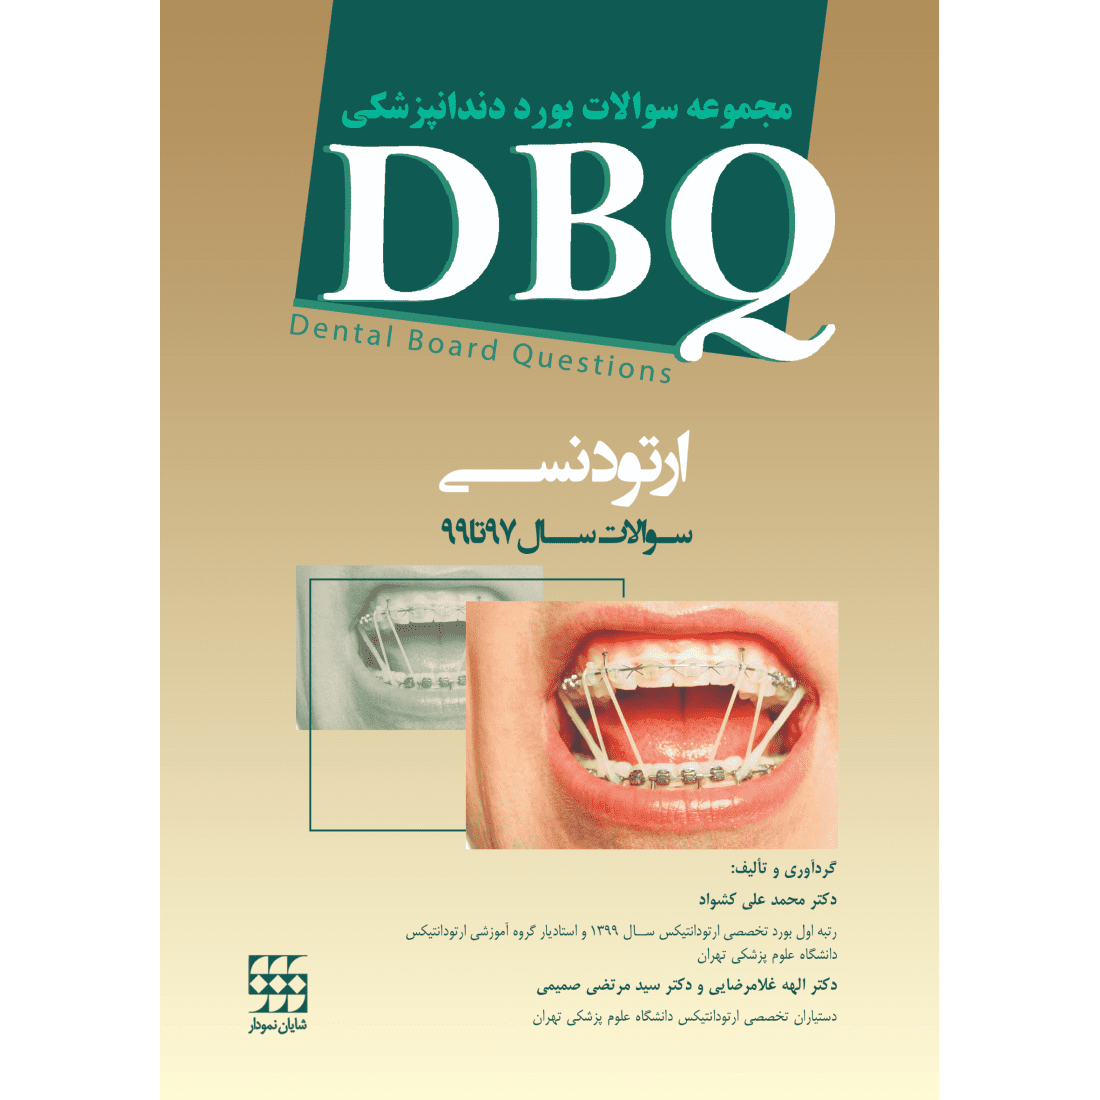 DBQ ارتودنسی (مجموعه سوالات بورد دندانپزشکی سوالات سال ۹۷ تا ...